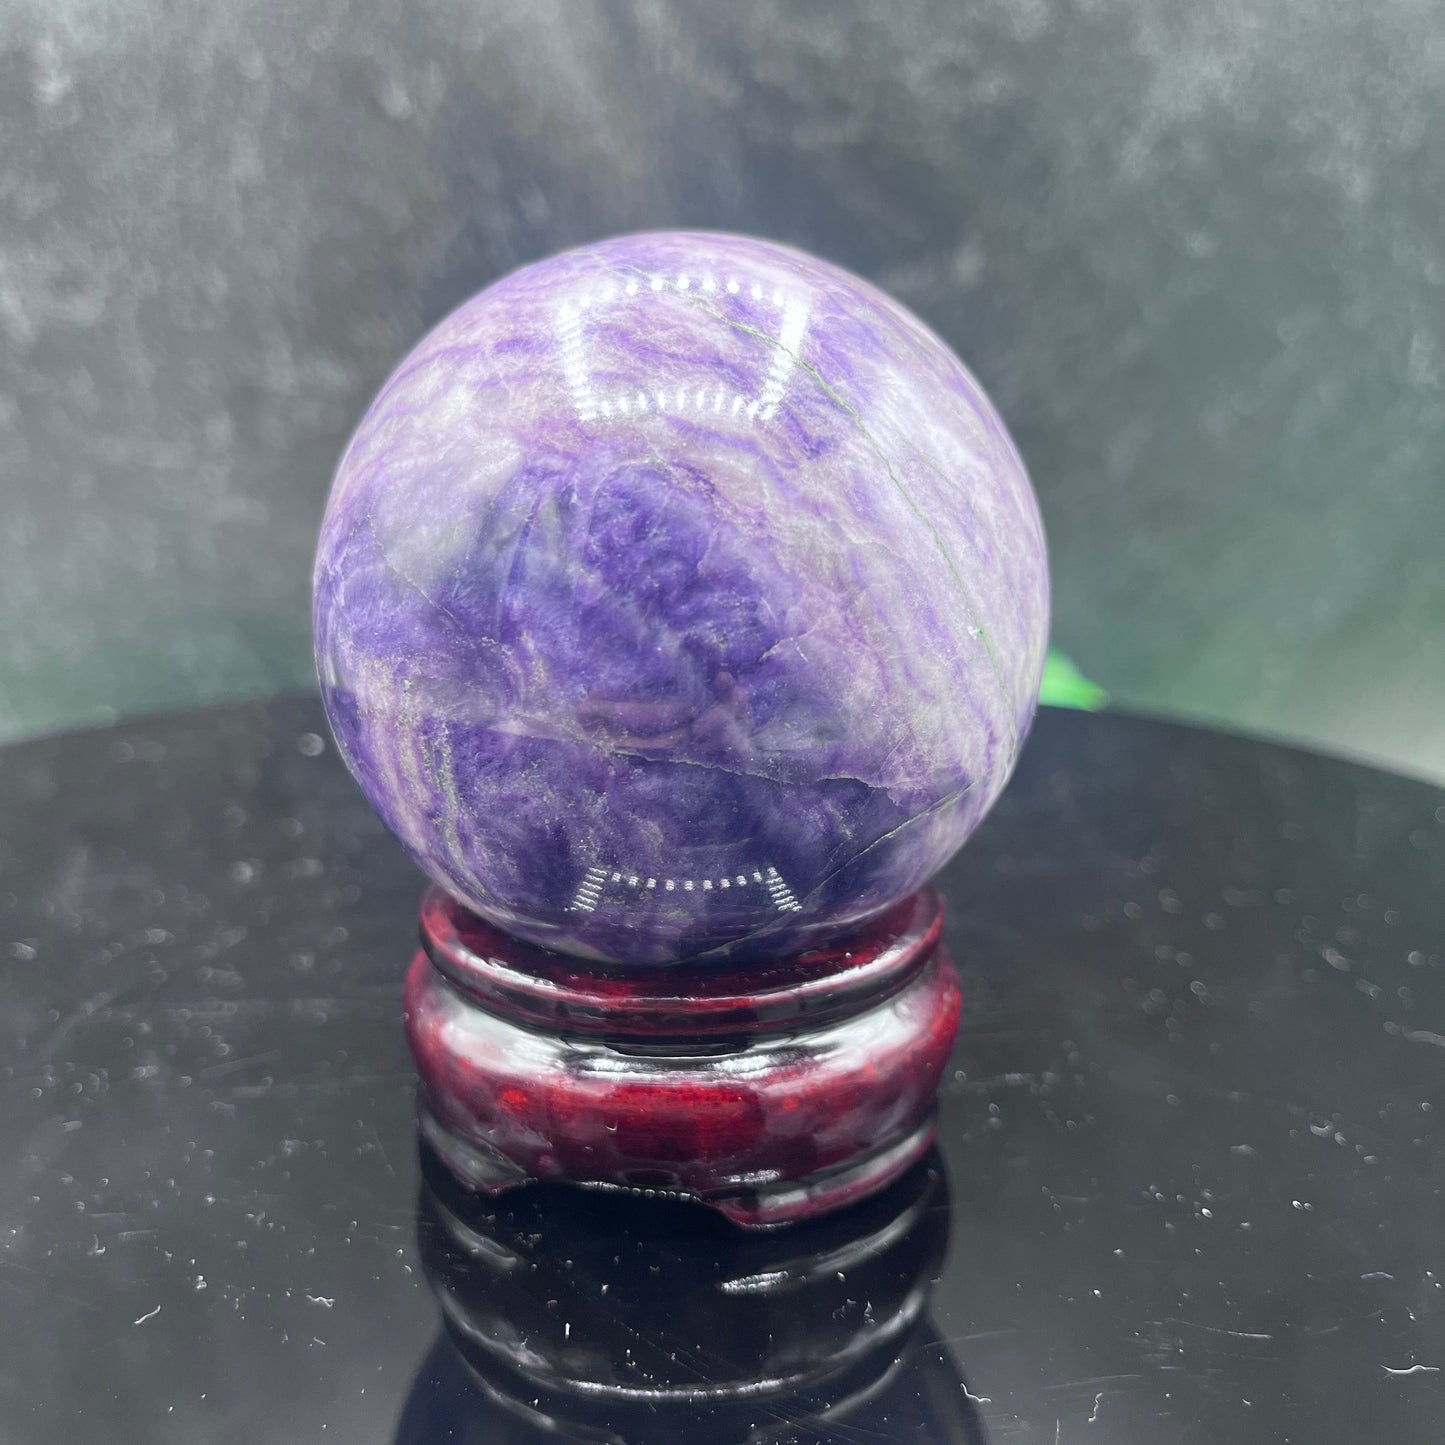 Silky Fluorite Sphere